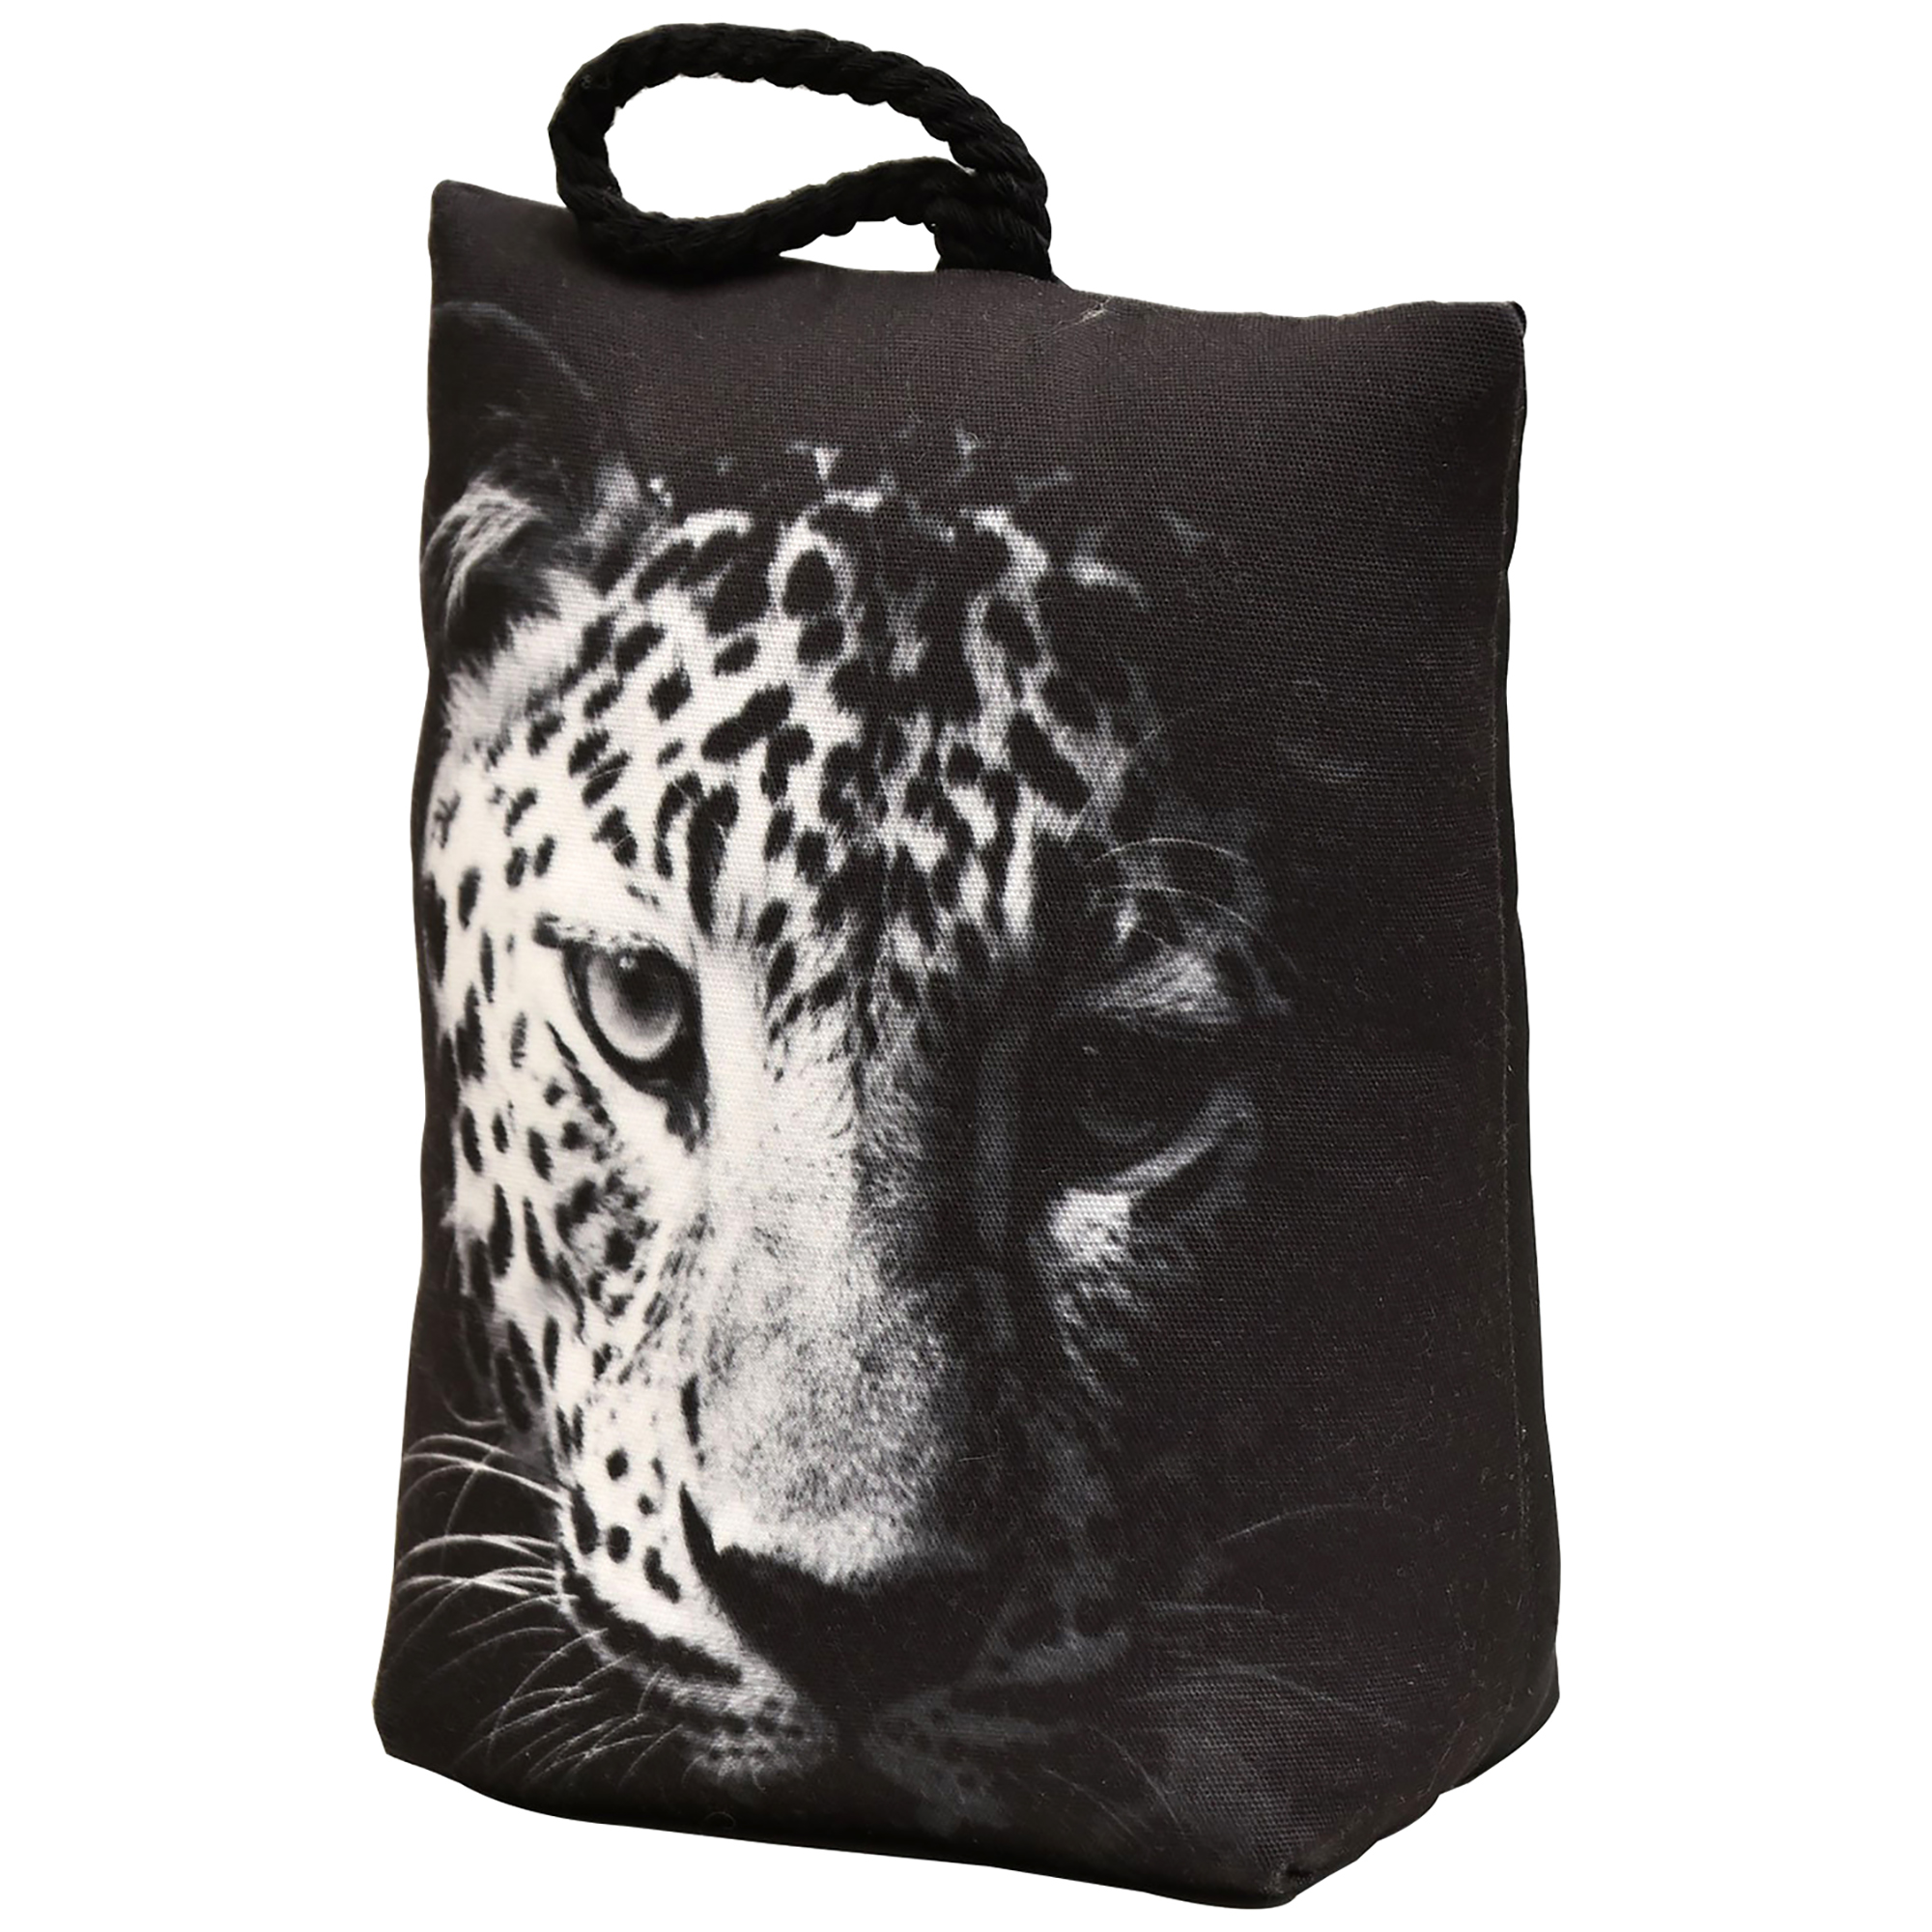 EVIDECO Leopard Printed Fabric Bag Door Stop Interior Weighted Floor 2.2 lbs